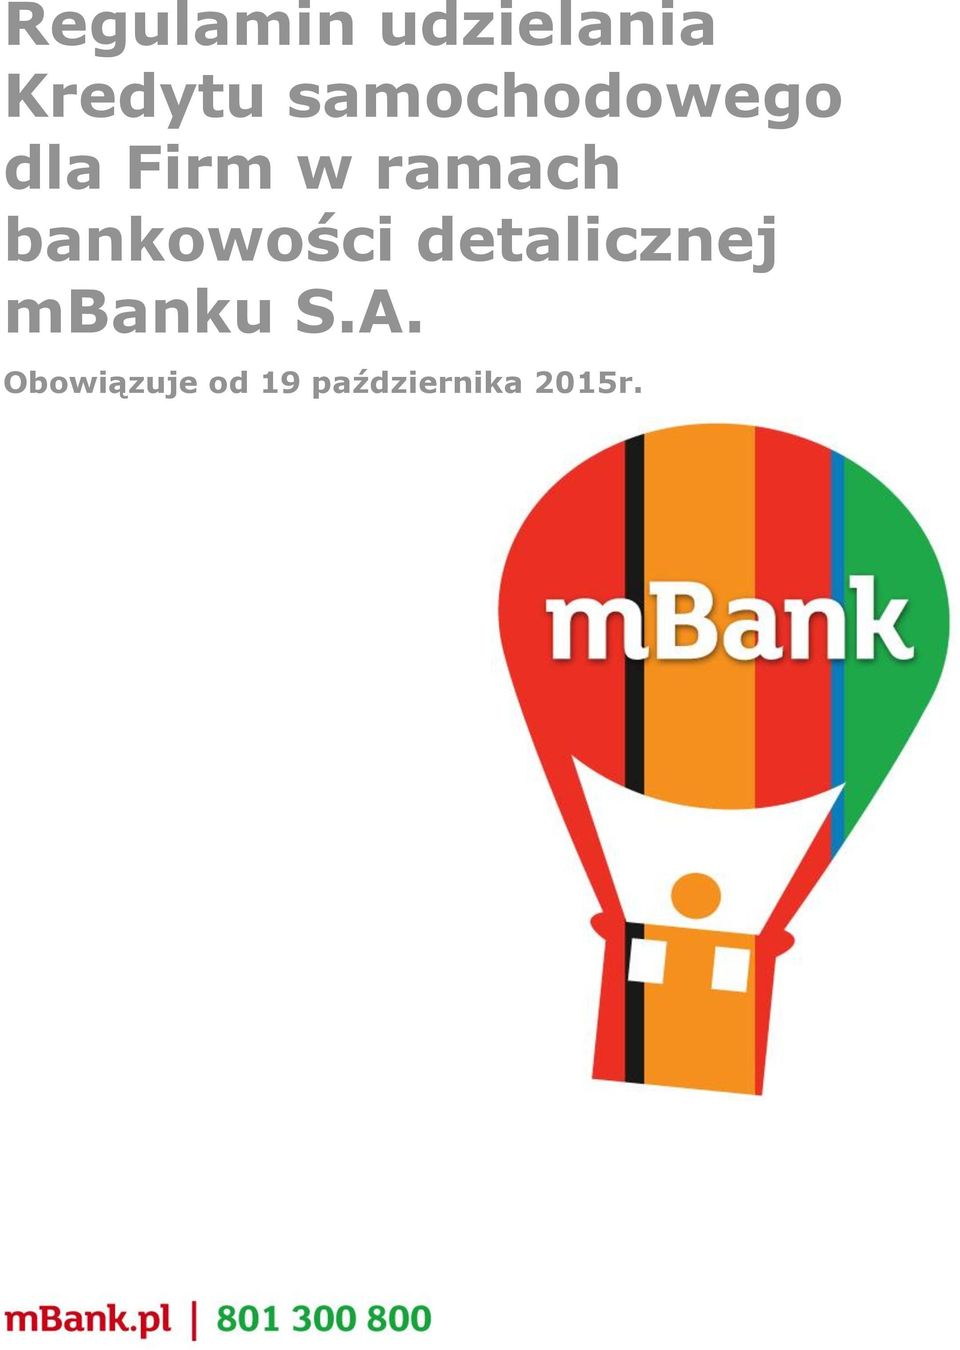 bankowości detalicznej mbanku S.